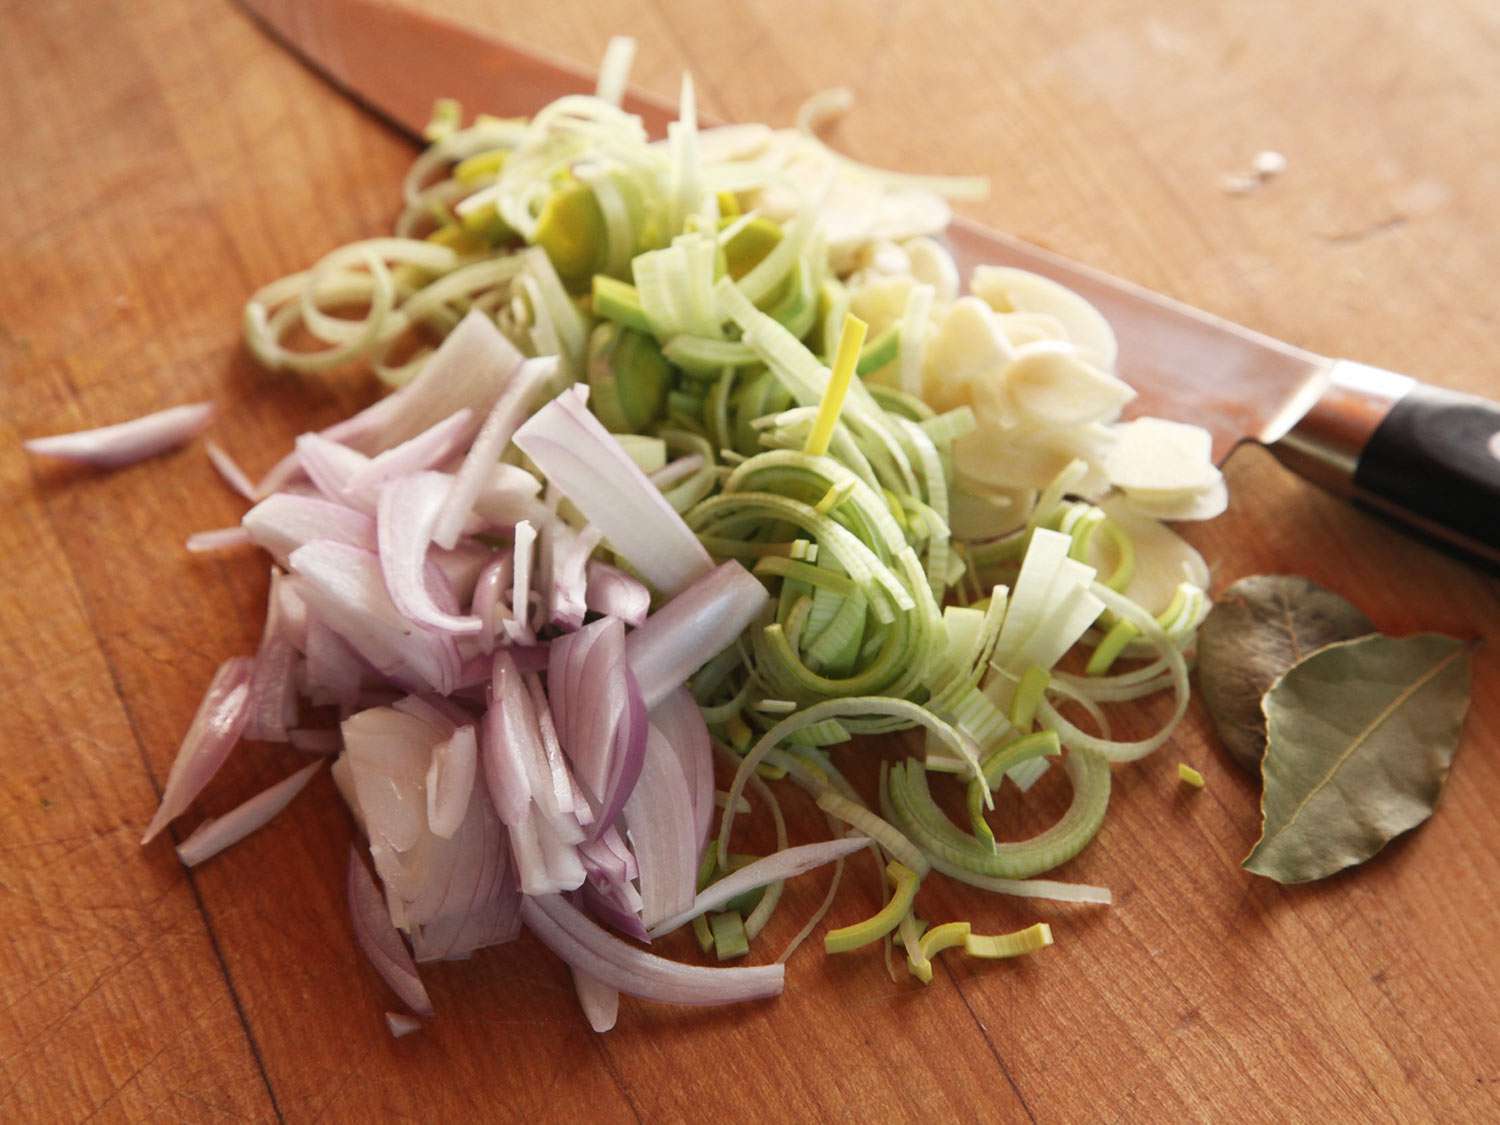 切成片的葱、韭菜和大蒜堆在砧板上，旁边放一对月桂叶。